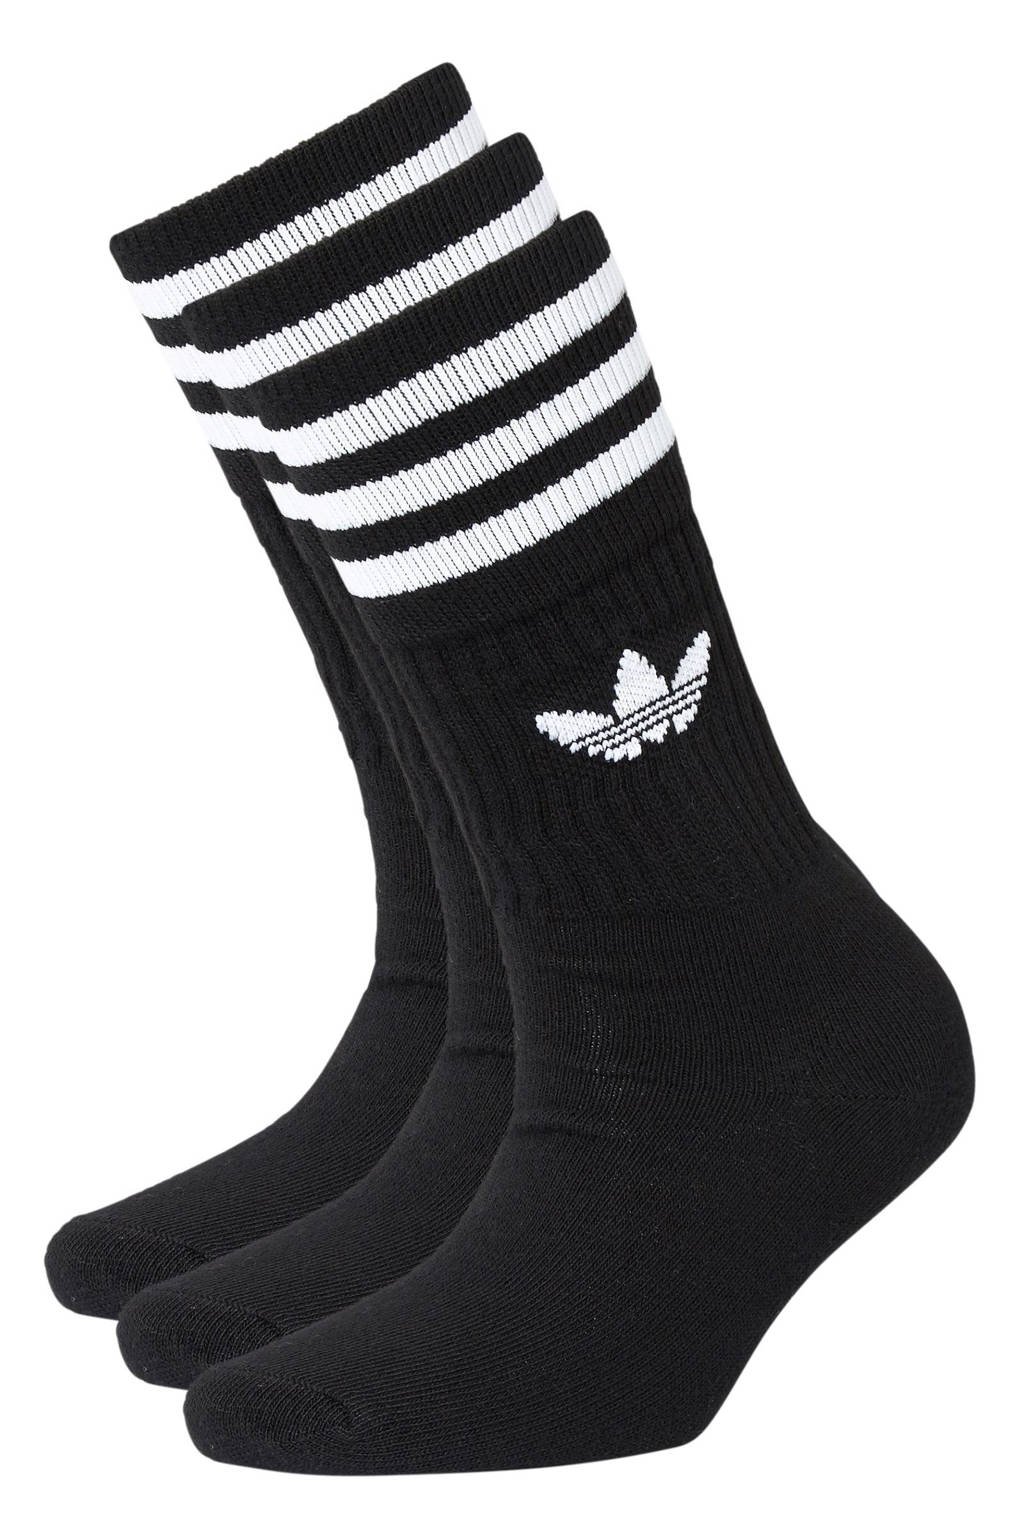 adidas Originals sokken - set van 3 zwart, zwart/ wit